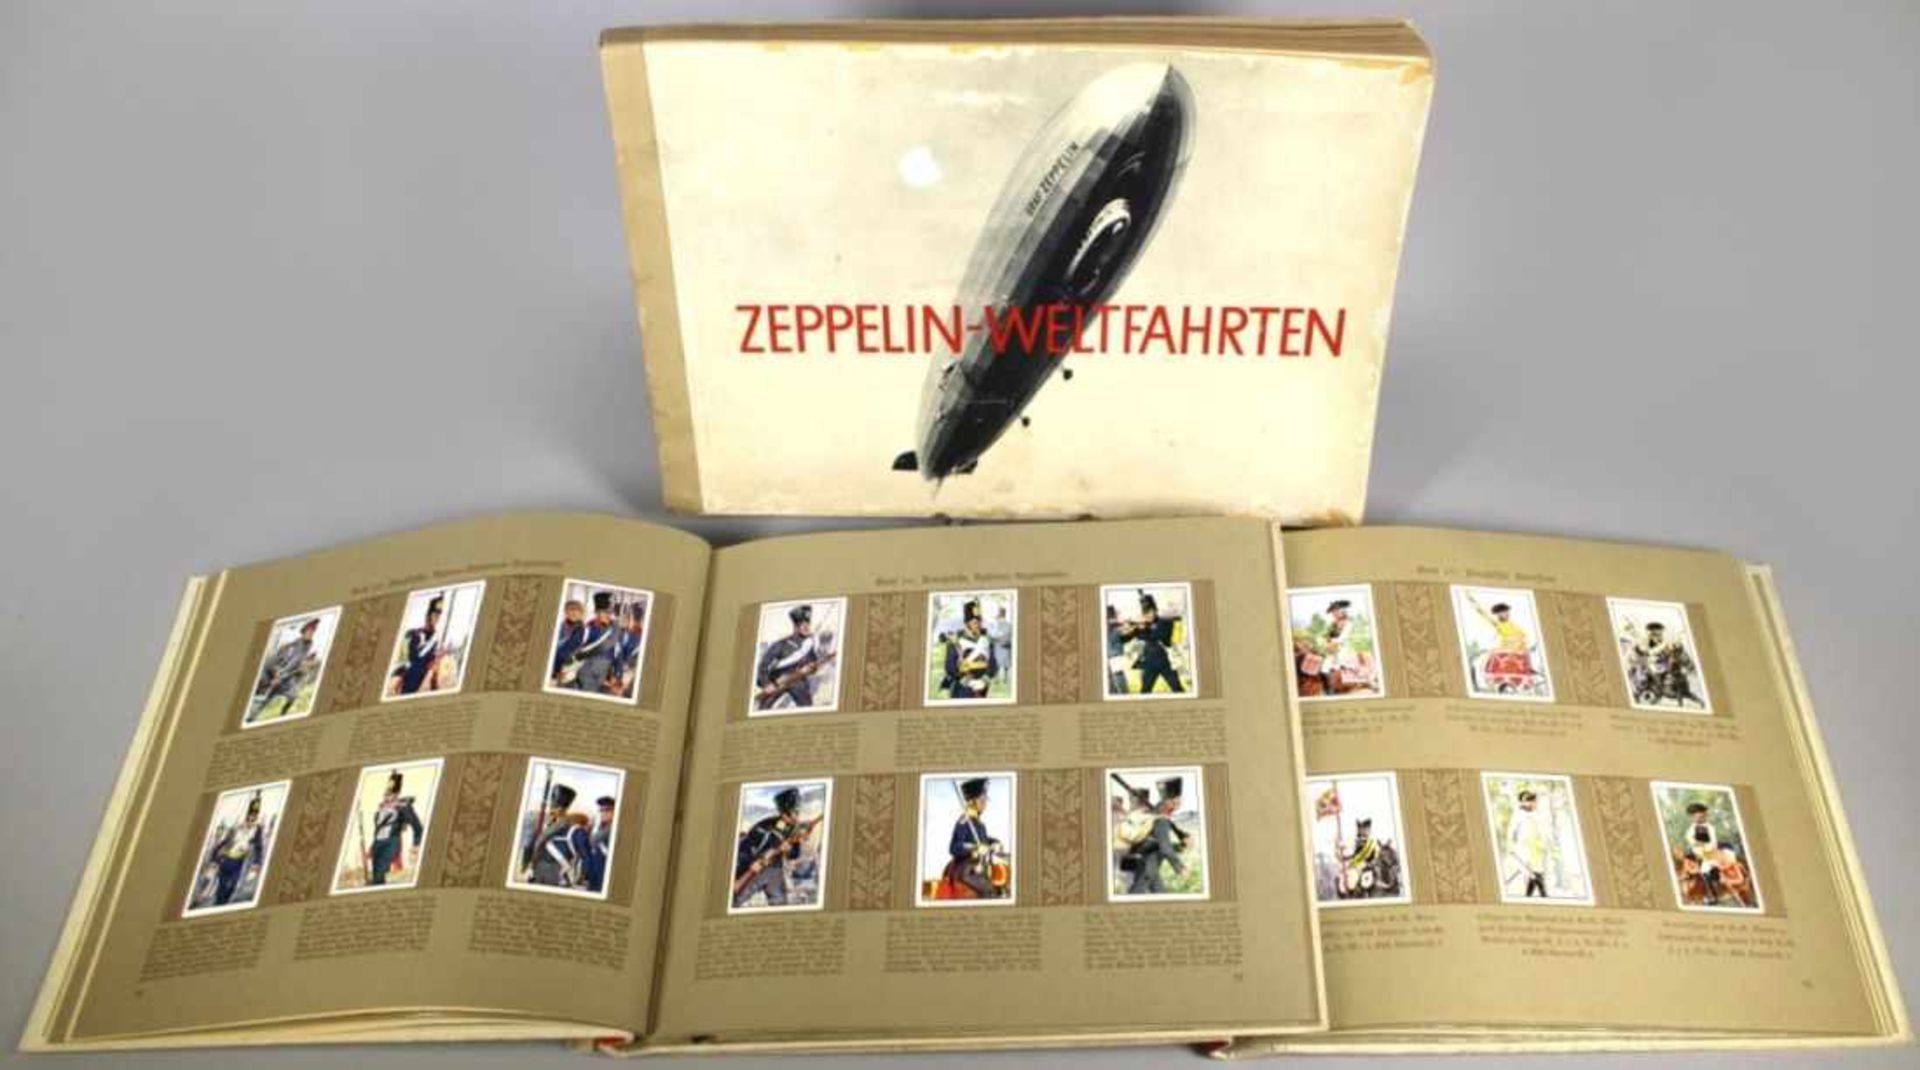 Drei Sammelbilder-Alben, 1. Hälfte 20. Jh., "Uniformen und Zeppelin-Weltfahrten",komplett,